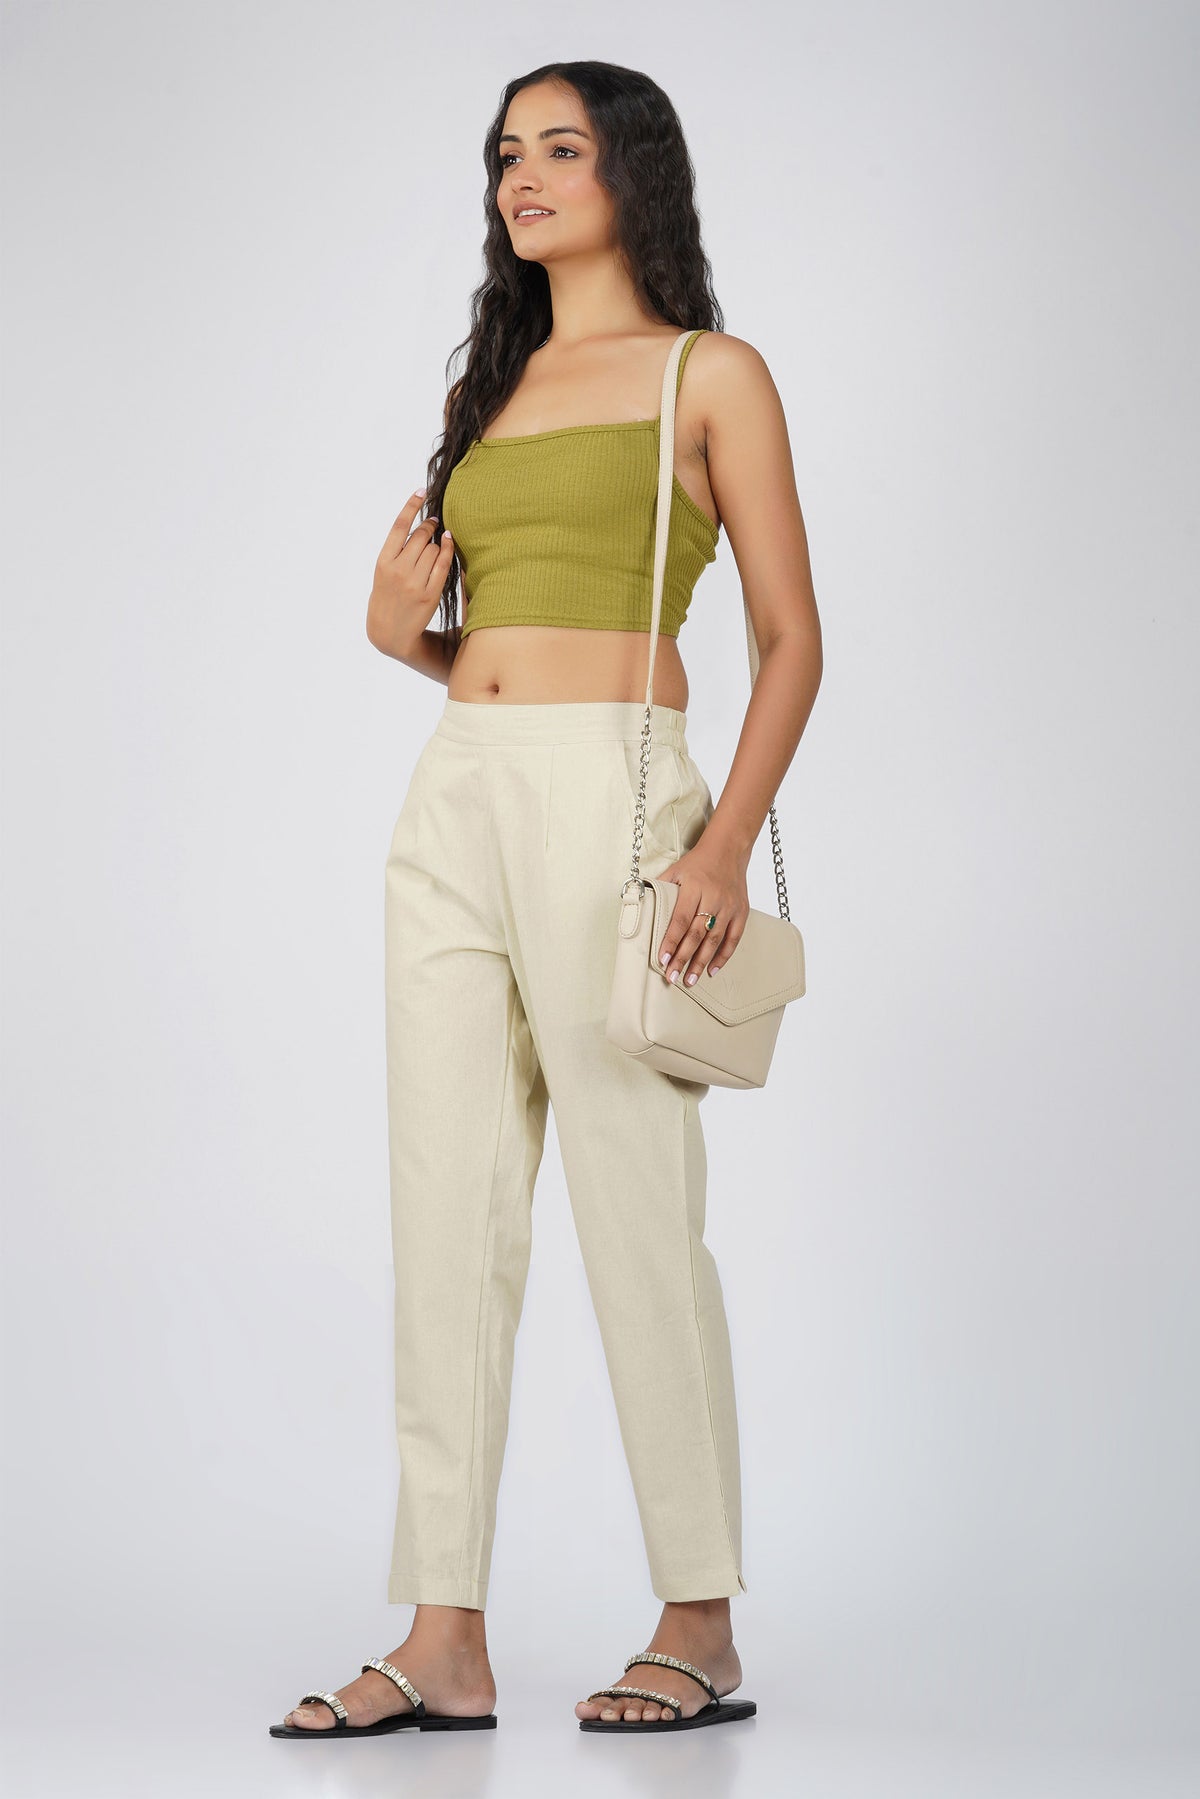 Khaki Trousers For Women - Buy Khaki Trousers For Women online in